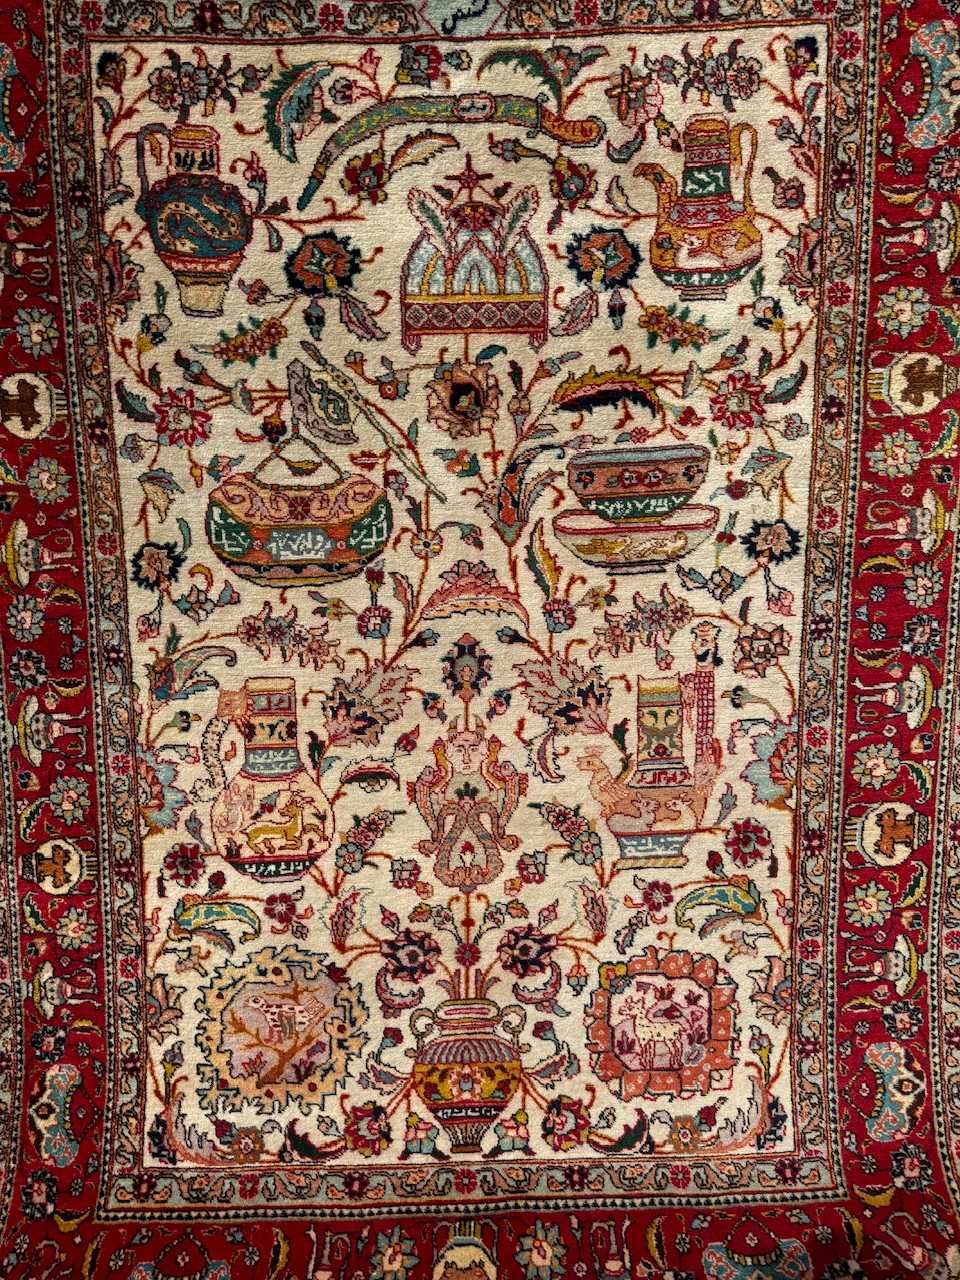 Dywan wełniany r. tkany perski Tabriz Figural 200x140 galeria 15 tyś